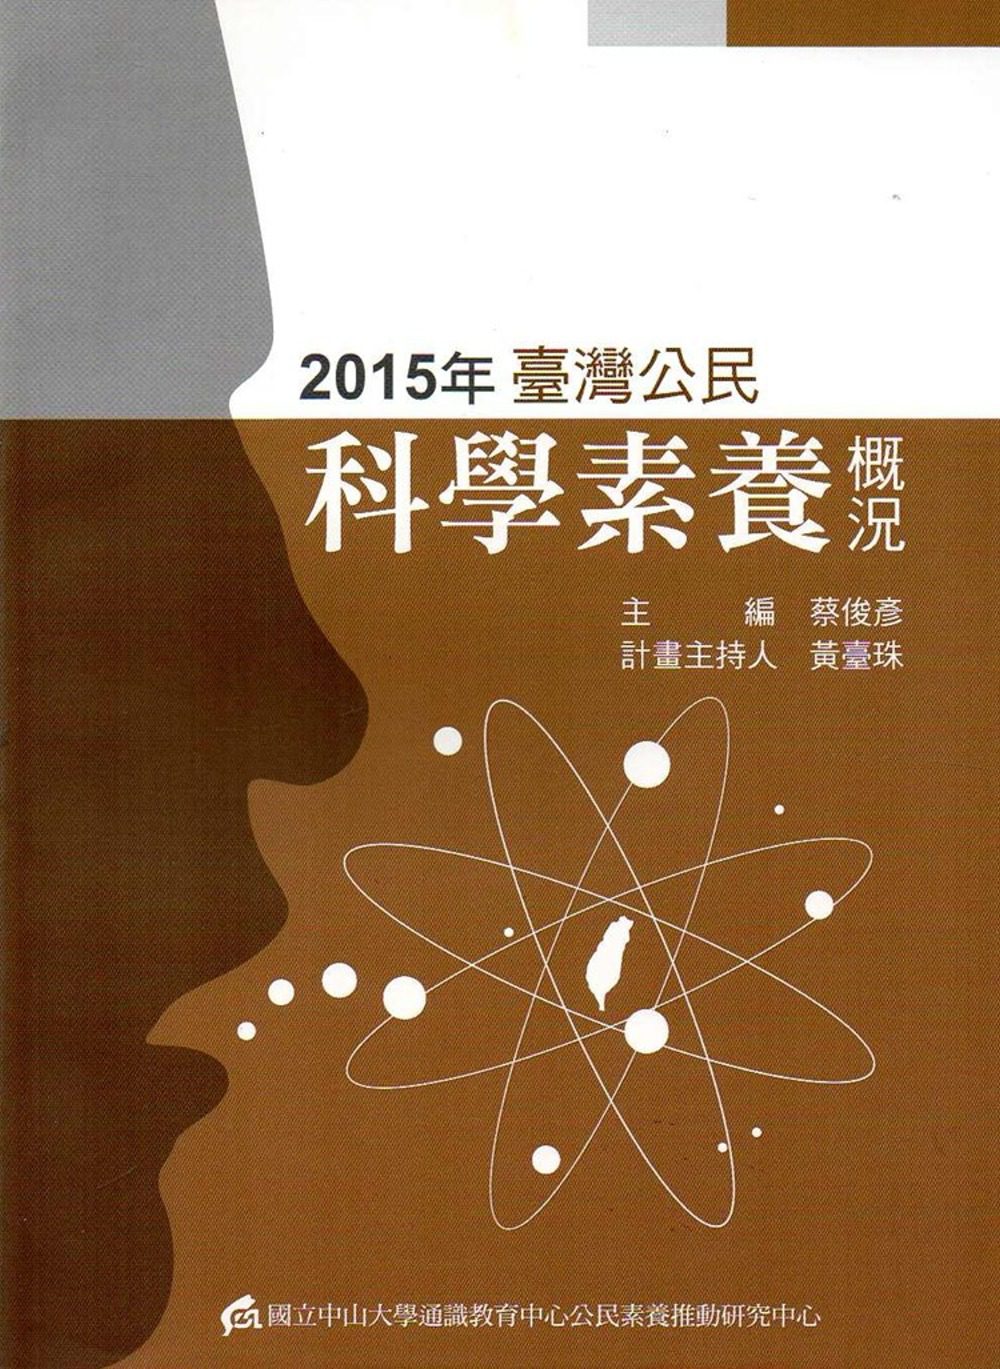 2015年臺灣公民科學素養概況(修訂初版)